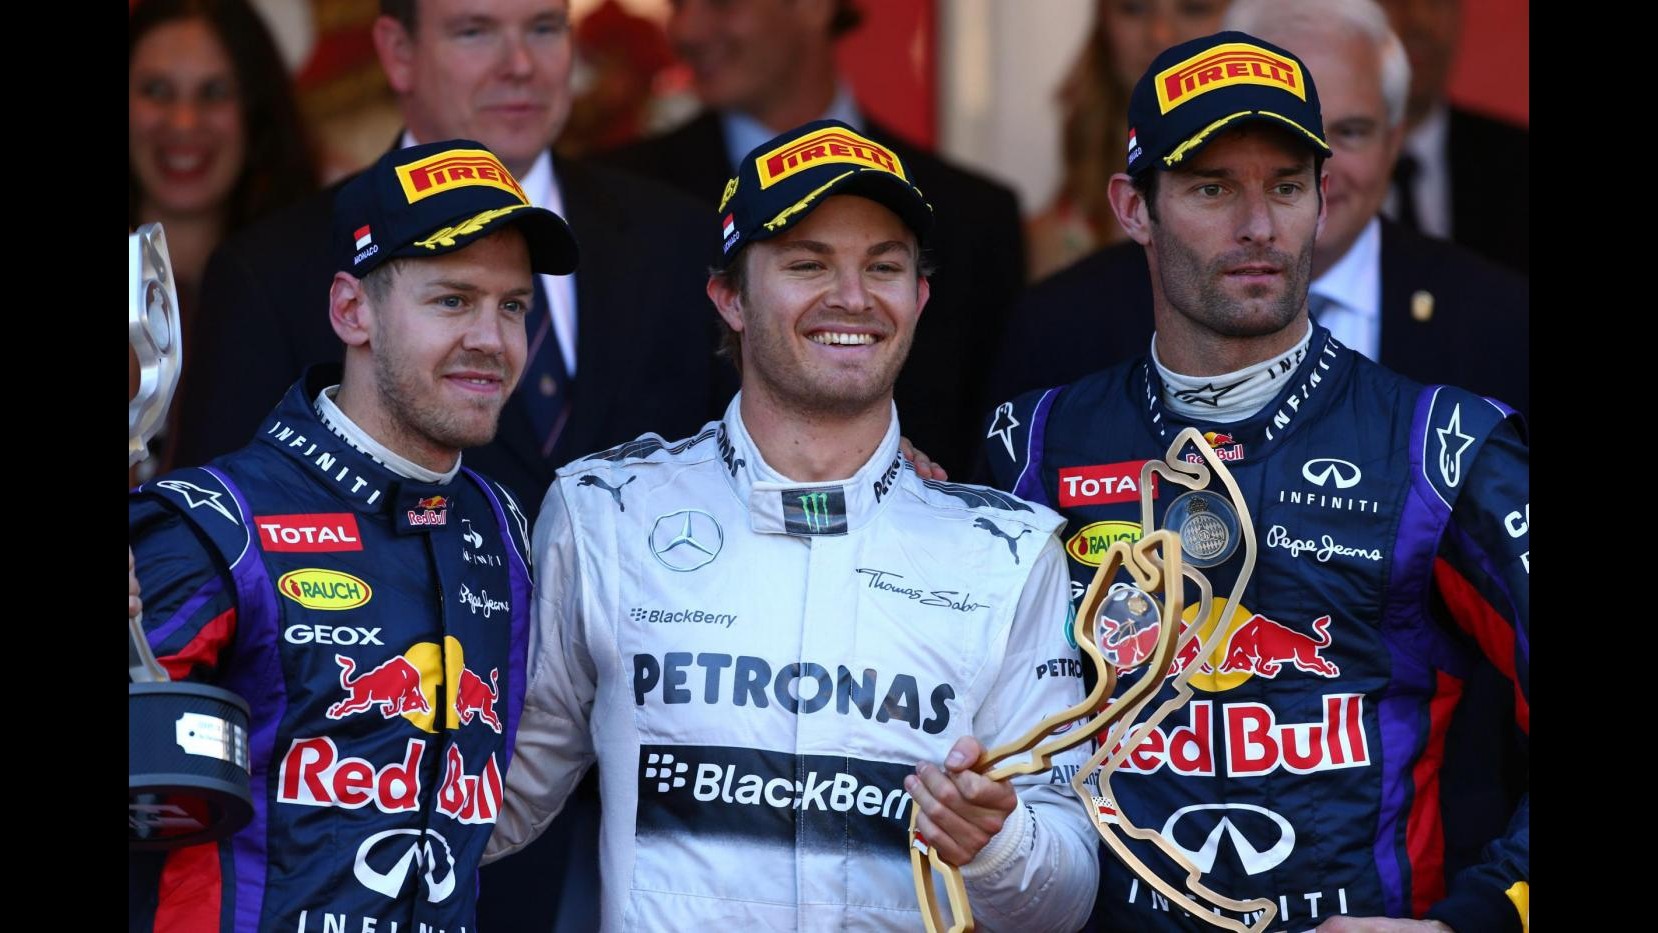 F1, Rosberg trionfa a Montecarlo.  Alonso 7°, ricorso Ferrari-Red Bull